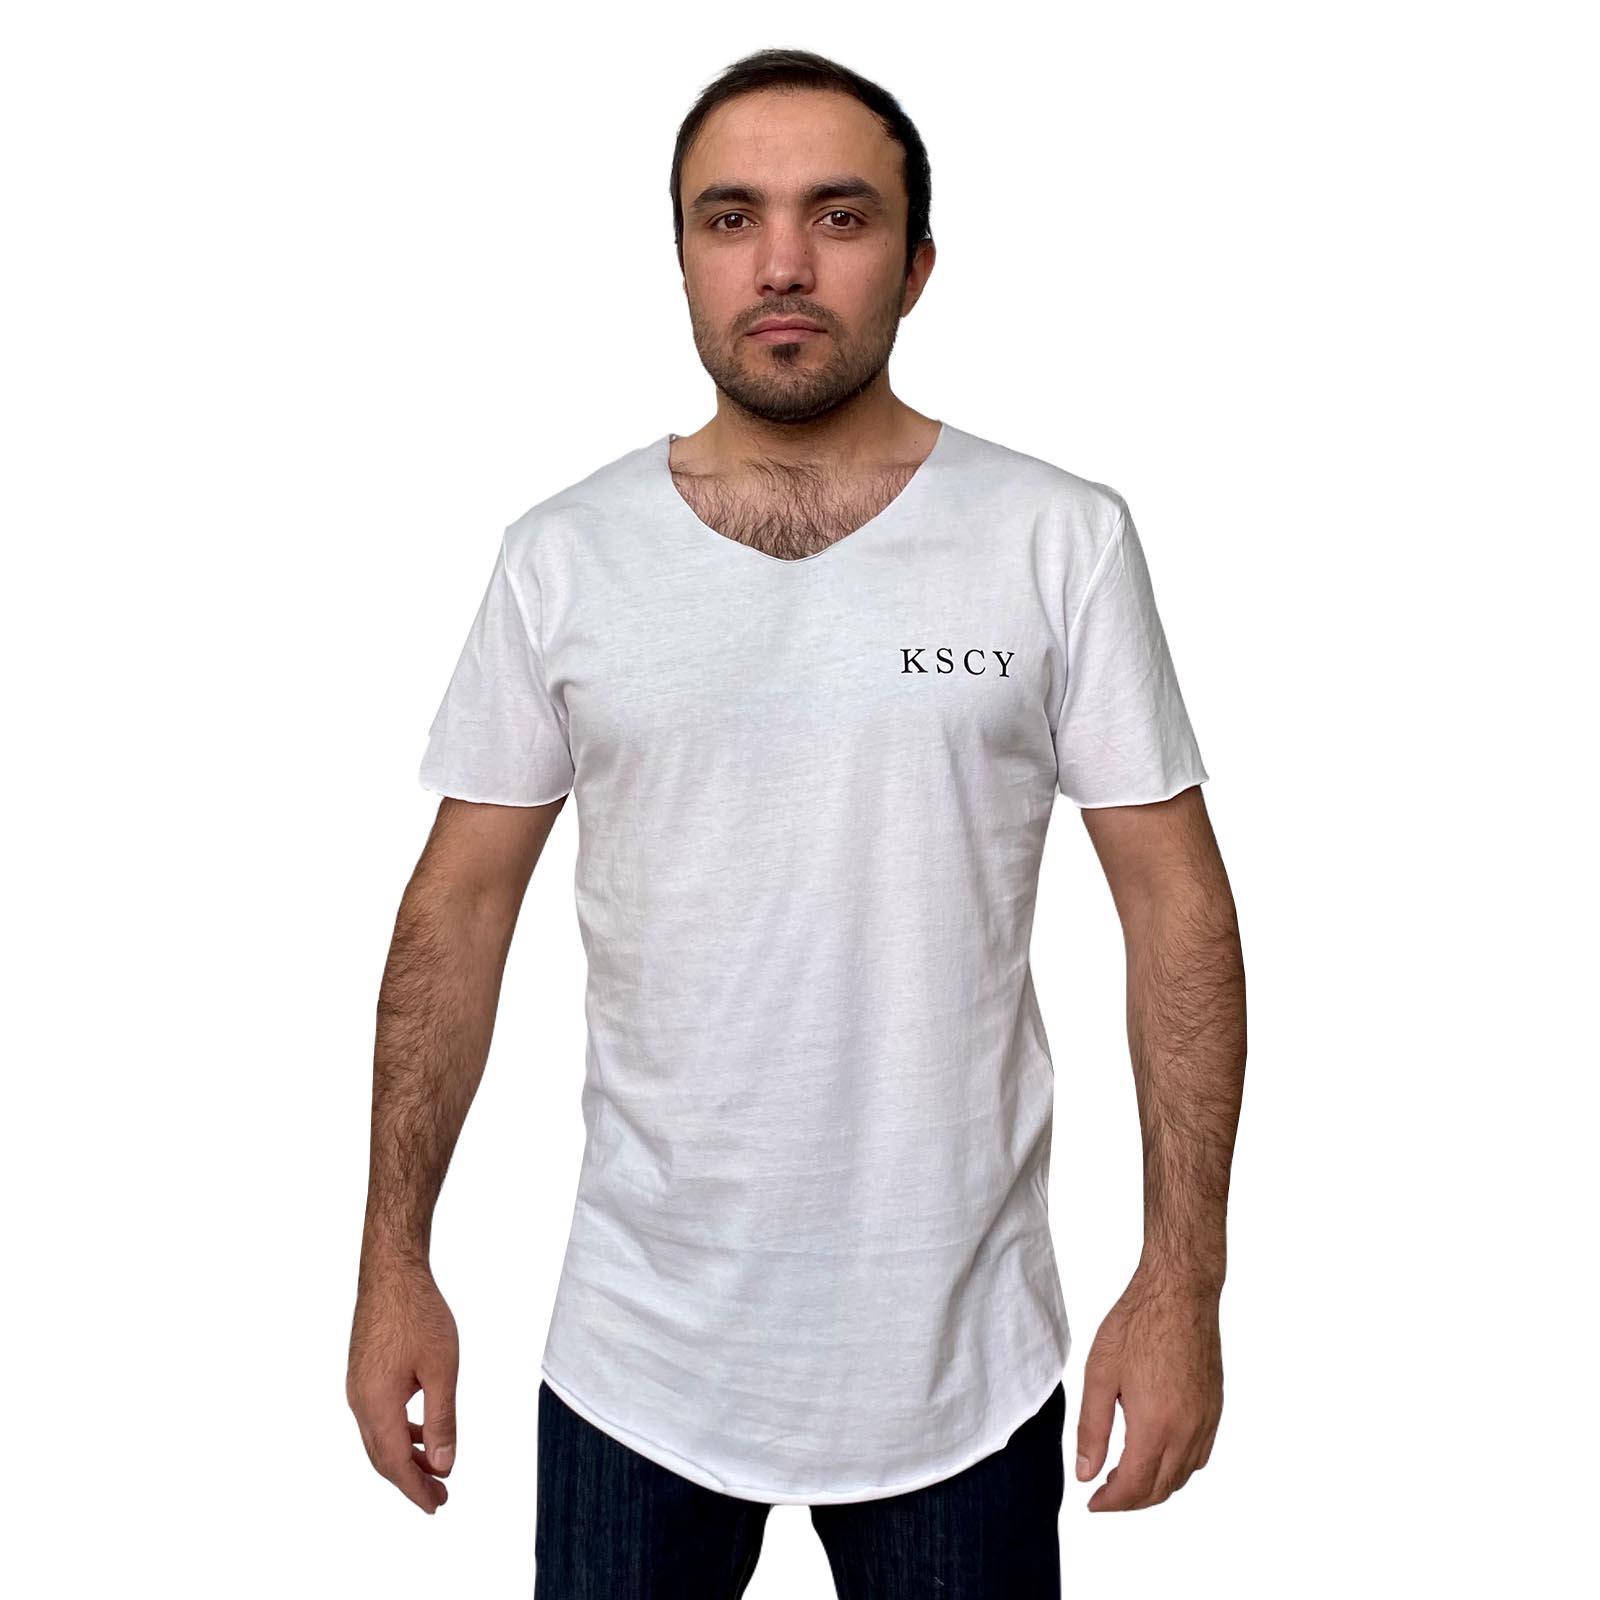 Купить в интернет магазине стильную мужскую футболку KSCY